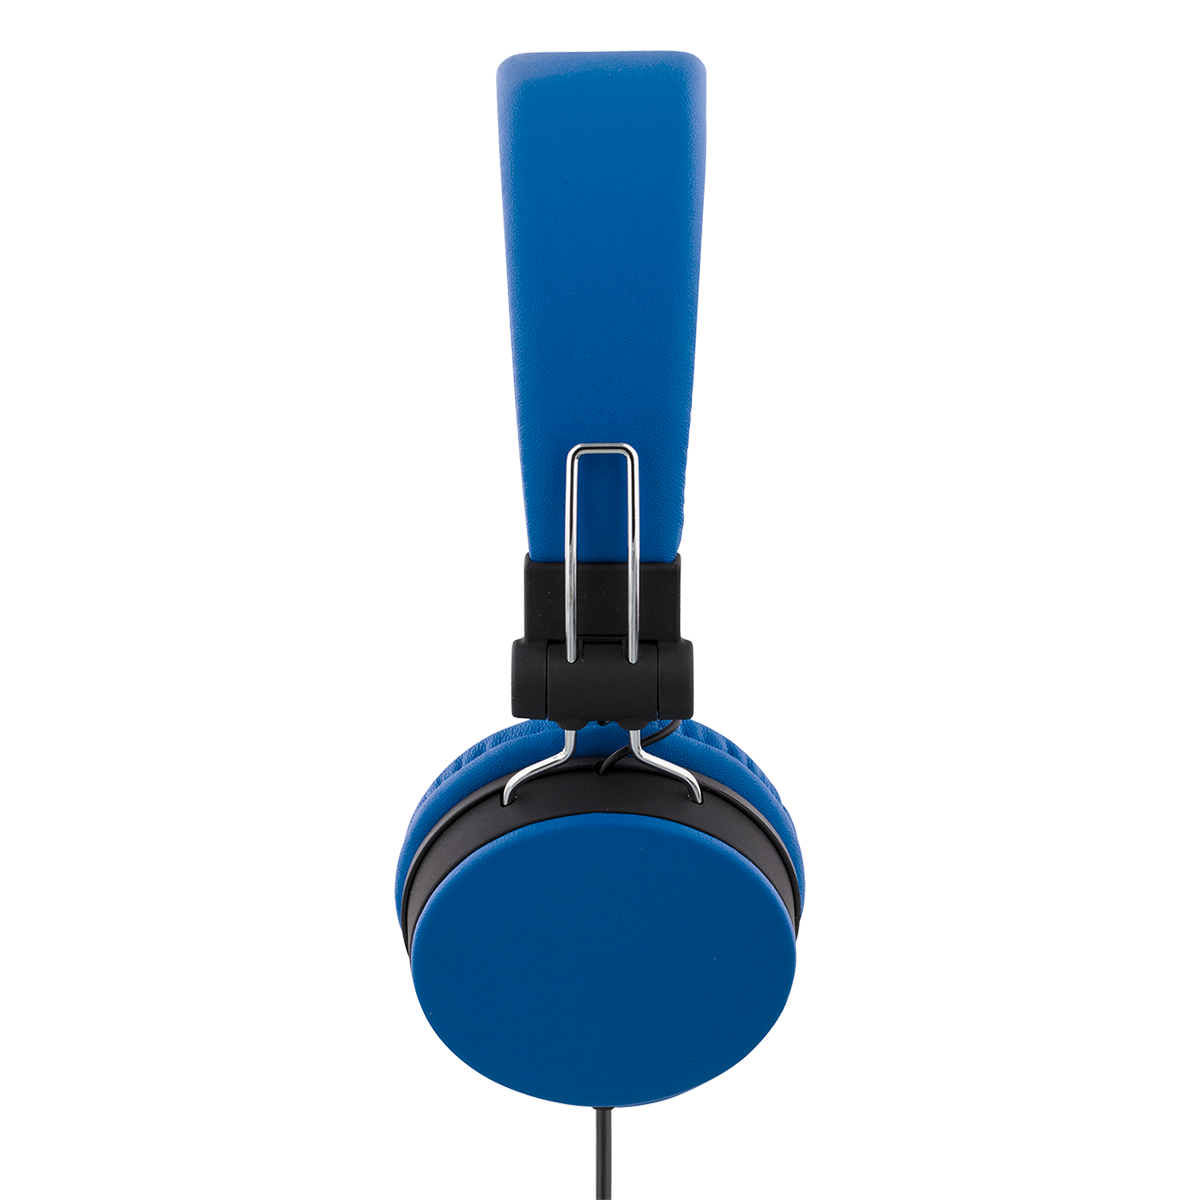 STREETZ vikbara hörlurar med mikrofon, 3.5mm, 1.5m, blå